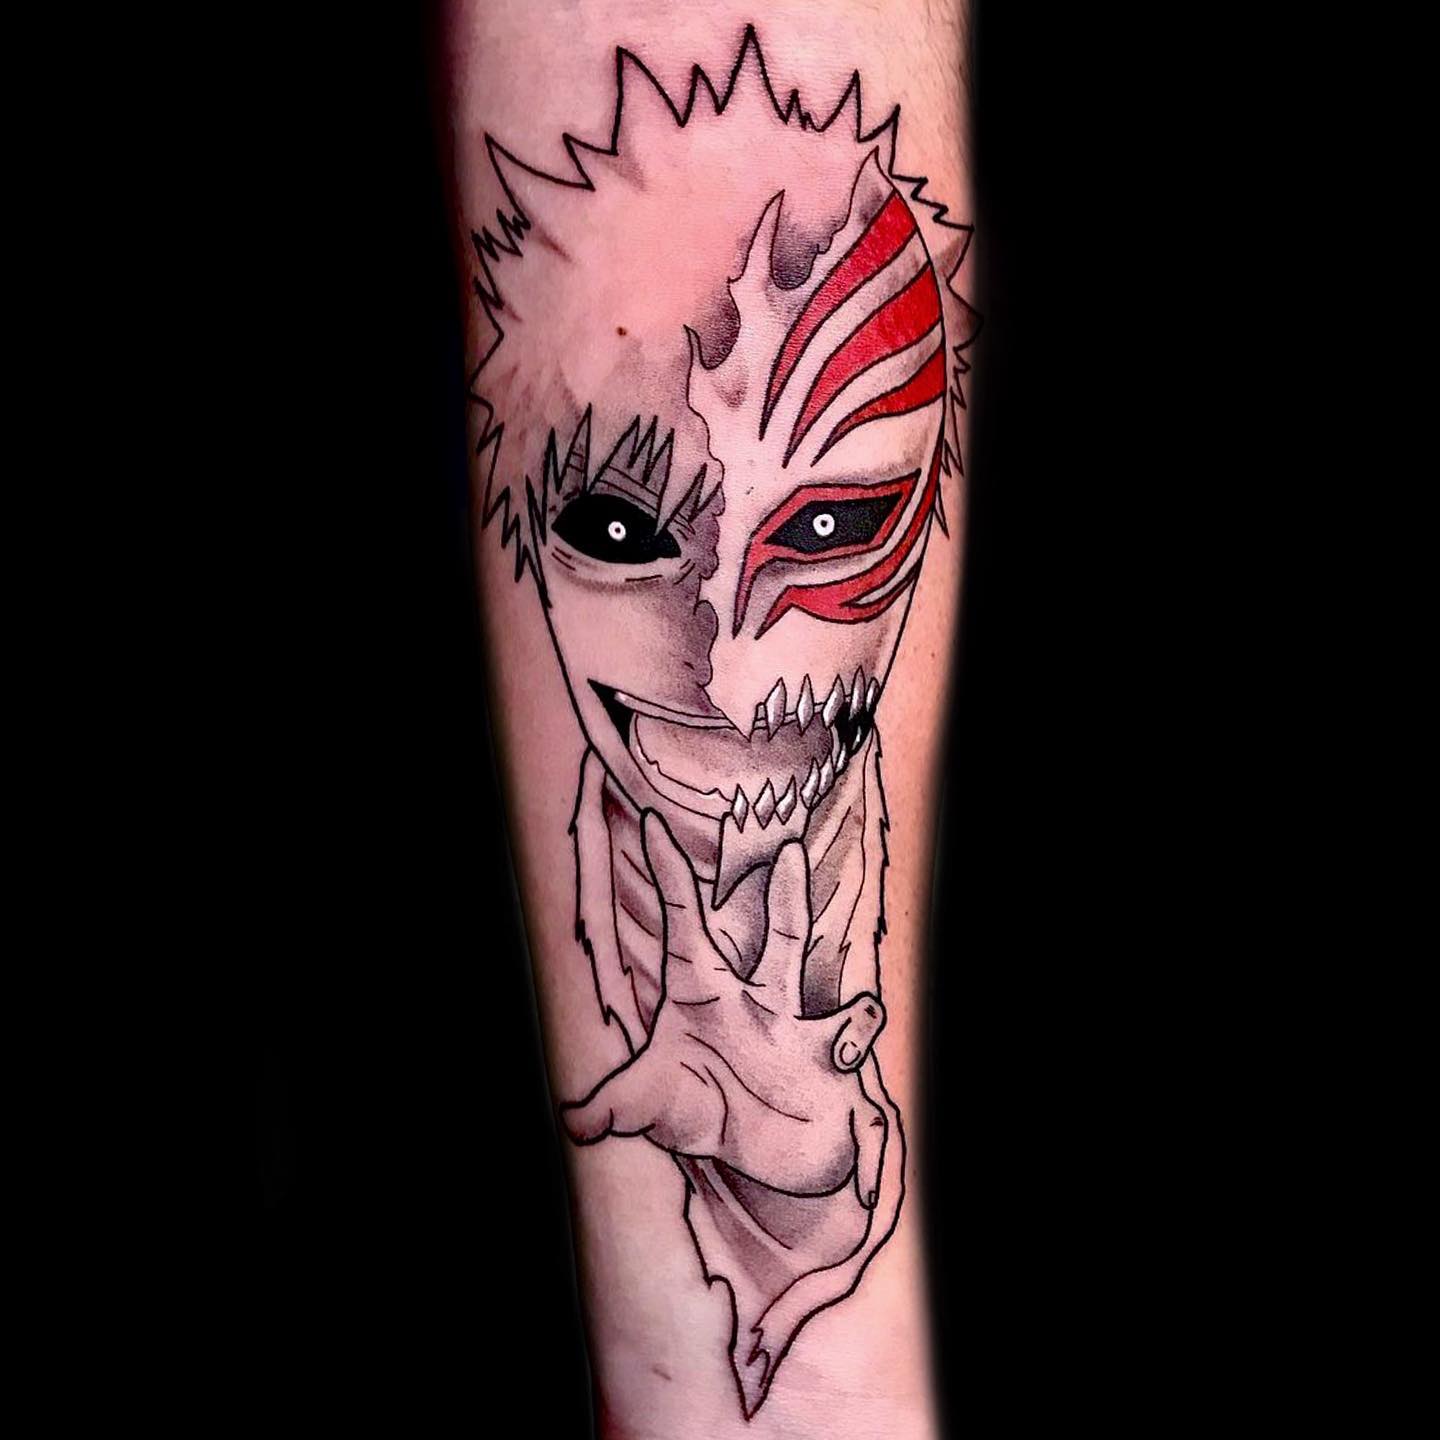 Forma hueca de Ichigo, tatuaje de anime Bleach